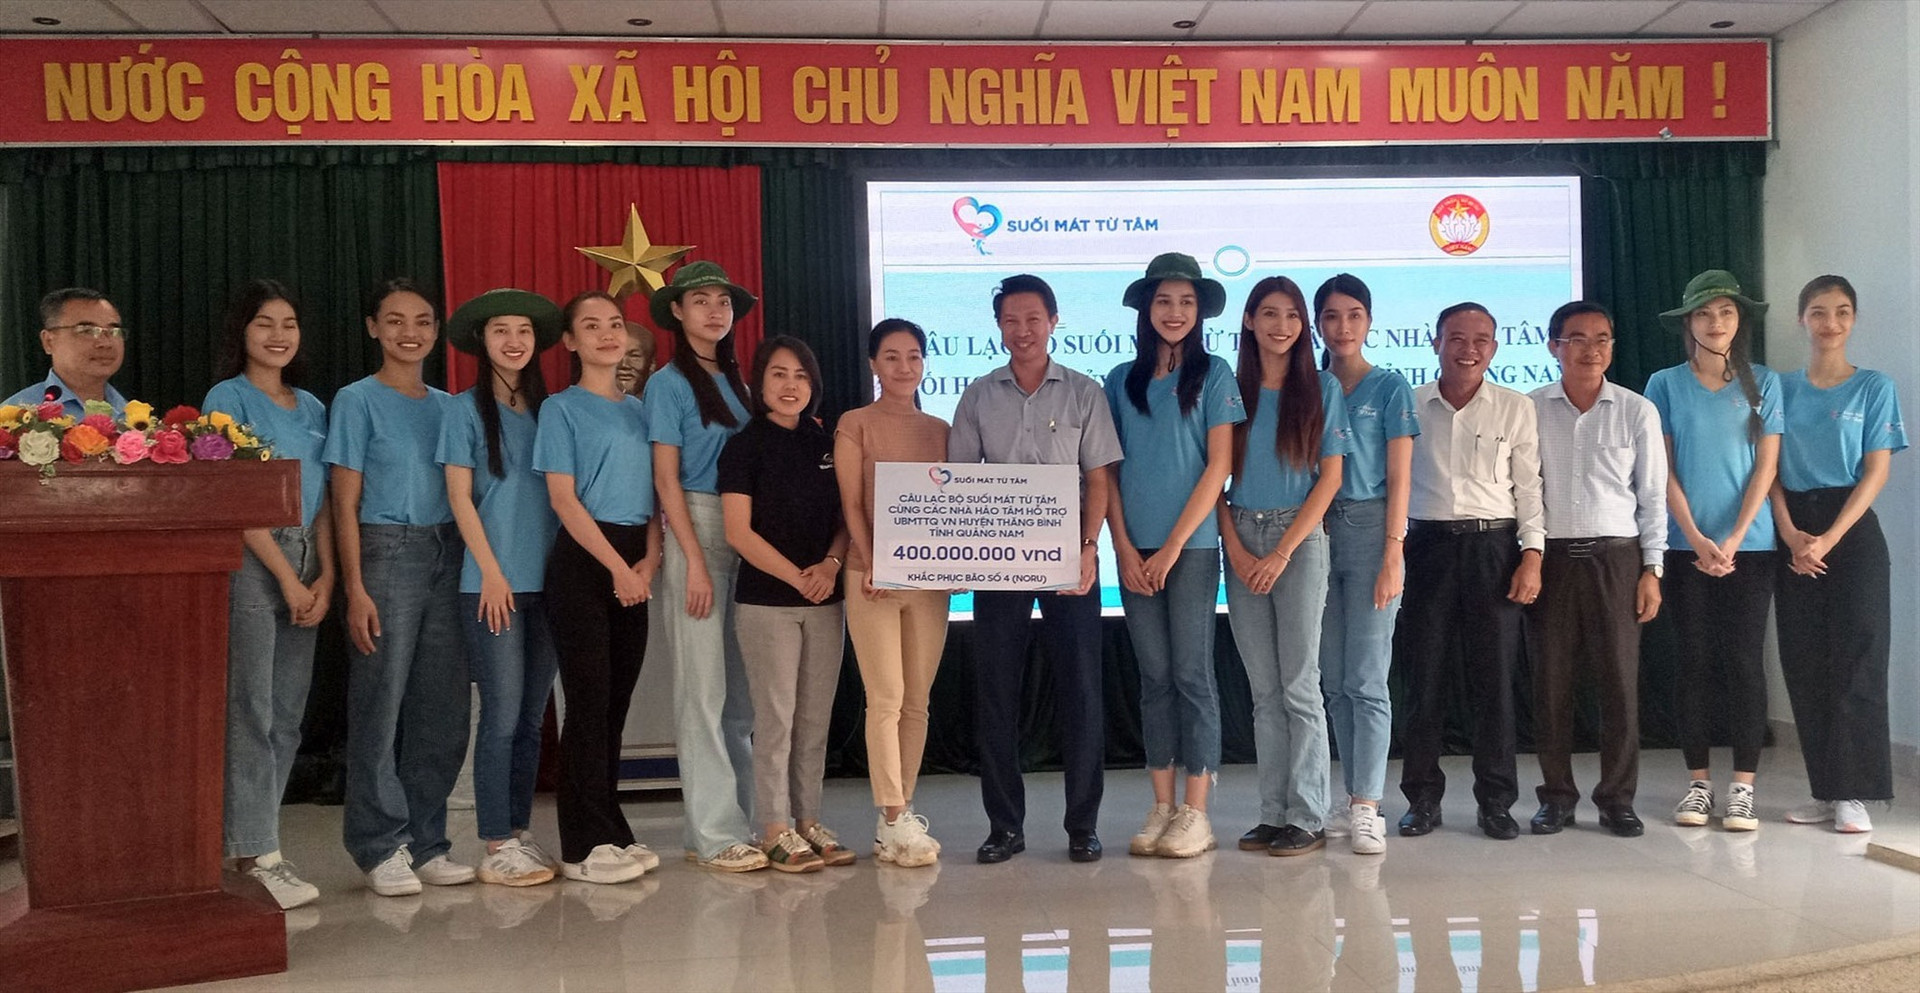 Câu lạc bộ Suối Mát Từ Tâm (TP.Hồ Chí Minh) trao tặng cho huyện Thăng Bình 400 triệu đồng hỗ trợ nhân dân khắc phục hậu quả sau bão số 4. Ảnh: MINH TÂN - HỒNG NĂM